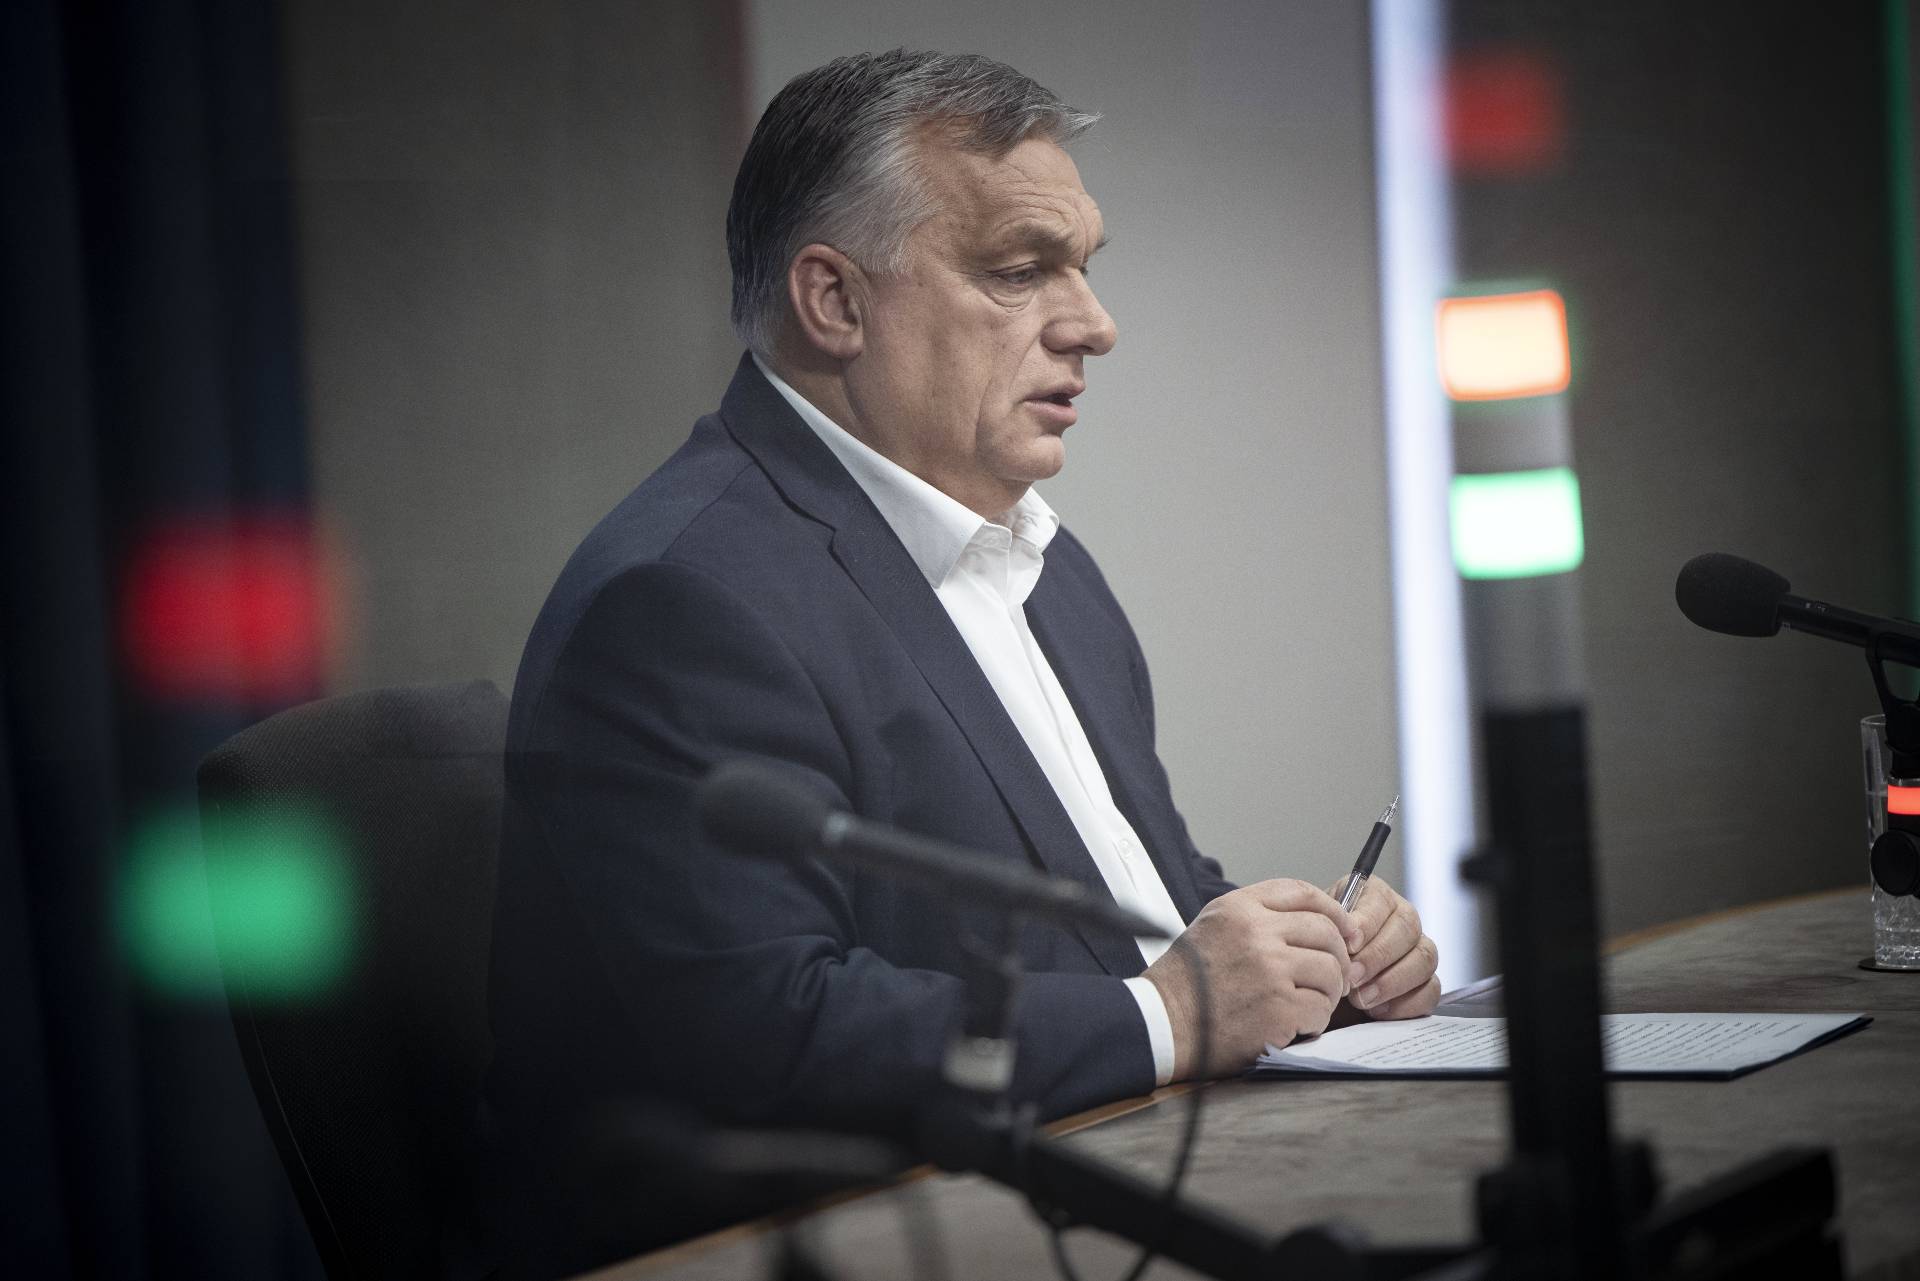 Mindenki kezdi unni az EU-ban Orbán Viktor zsarolási taktikáit – állítja egy svéd tisztségviselő